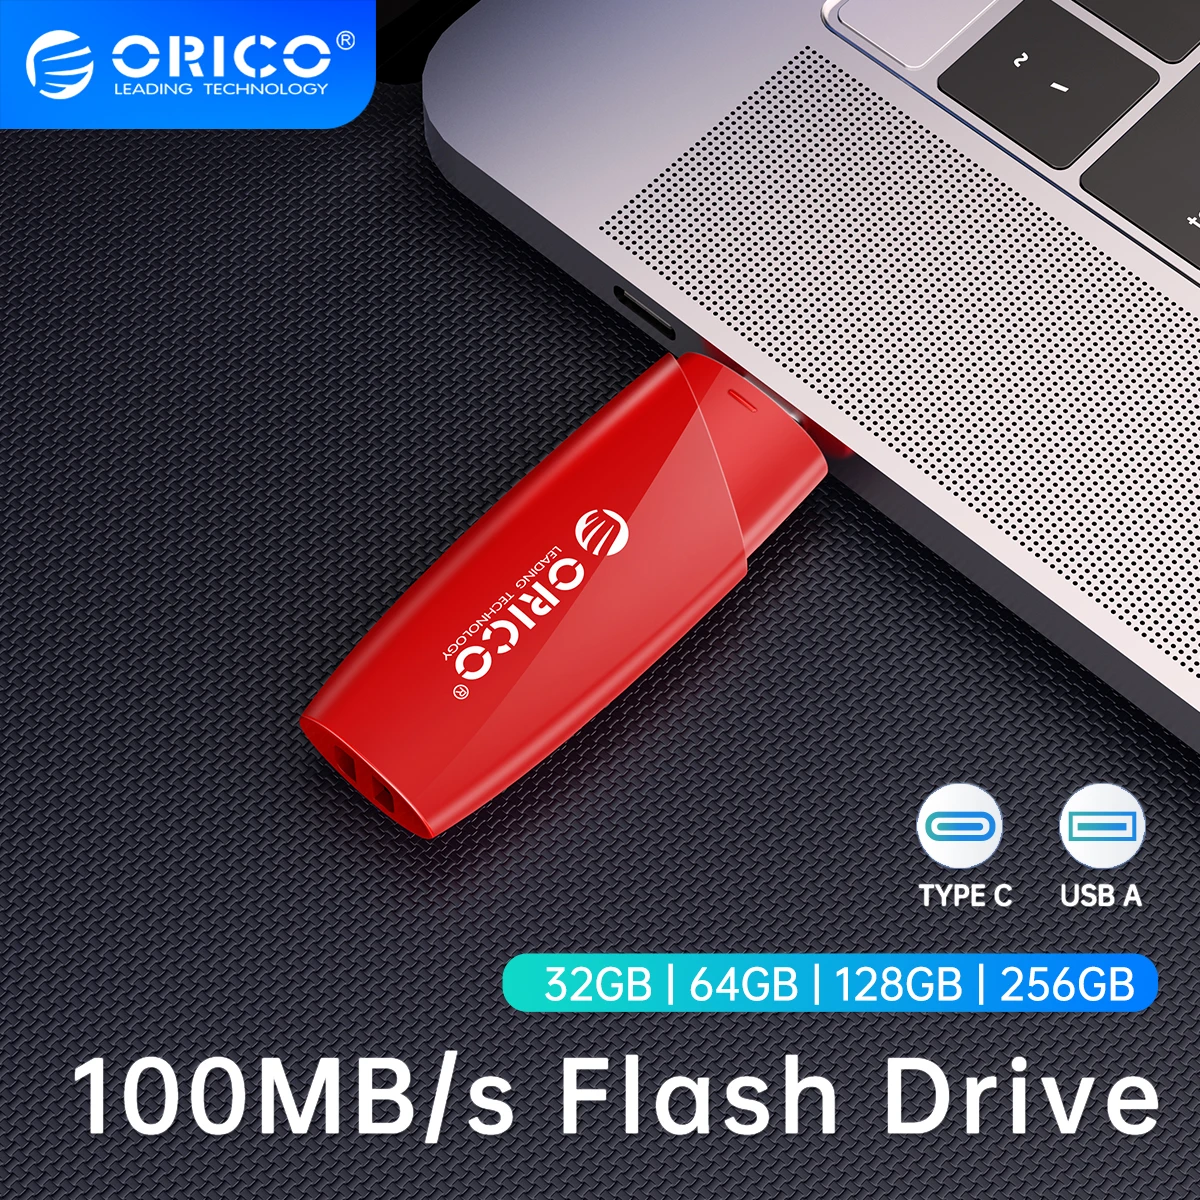 

ORICO New Trend USB3.0 USB Flash Drives 32GB 64GB 128GB 256GB Pen Drive USB 3.0 Stick Pendrive Black Red for External Storage